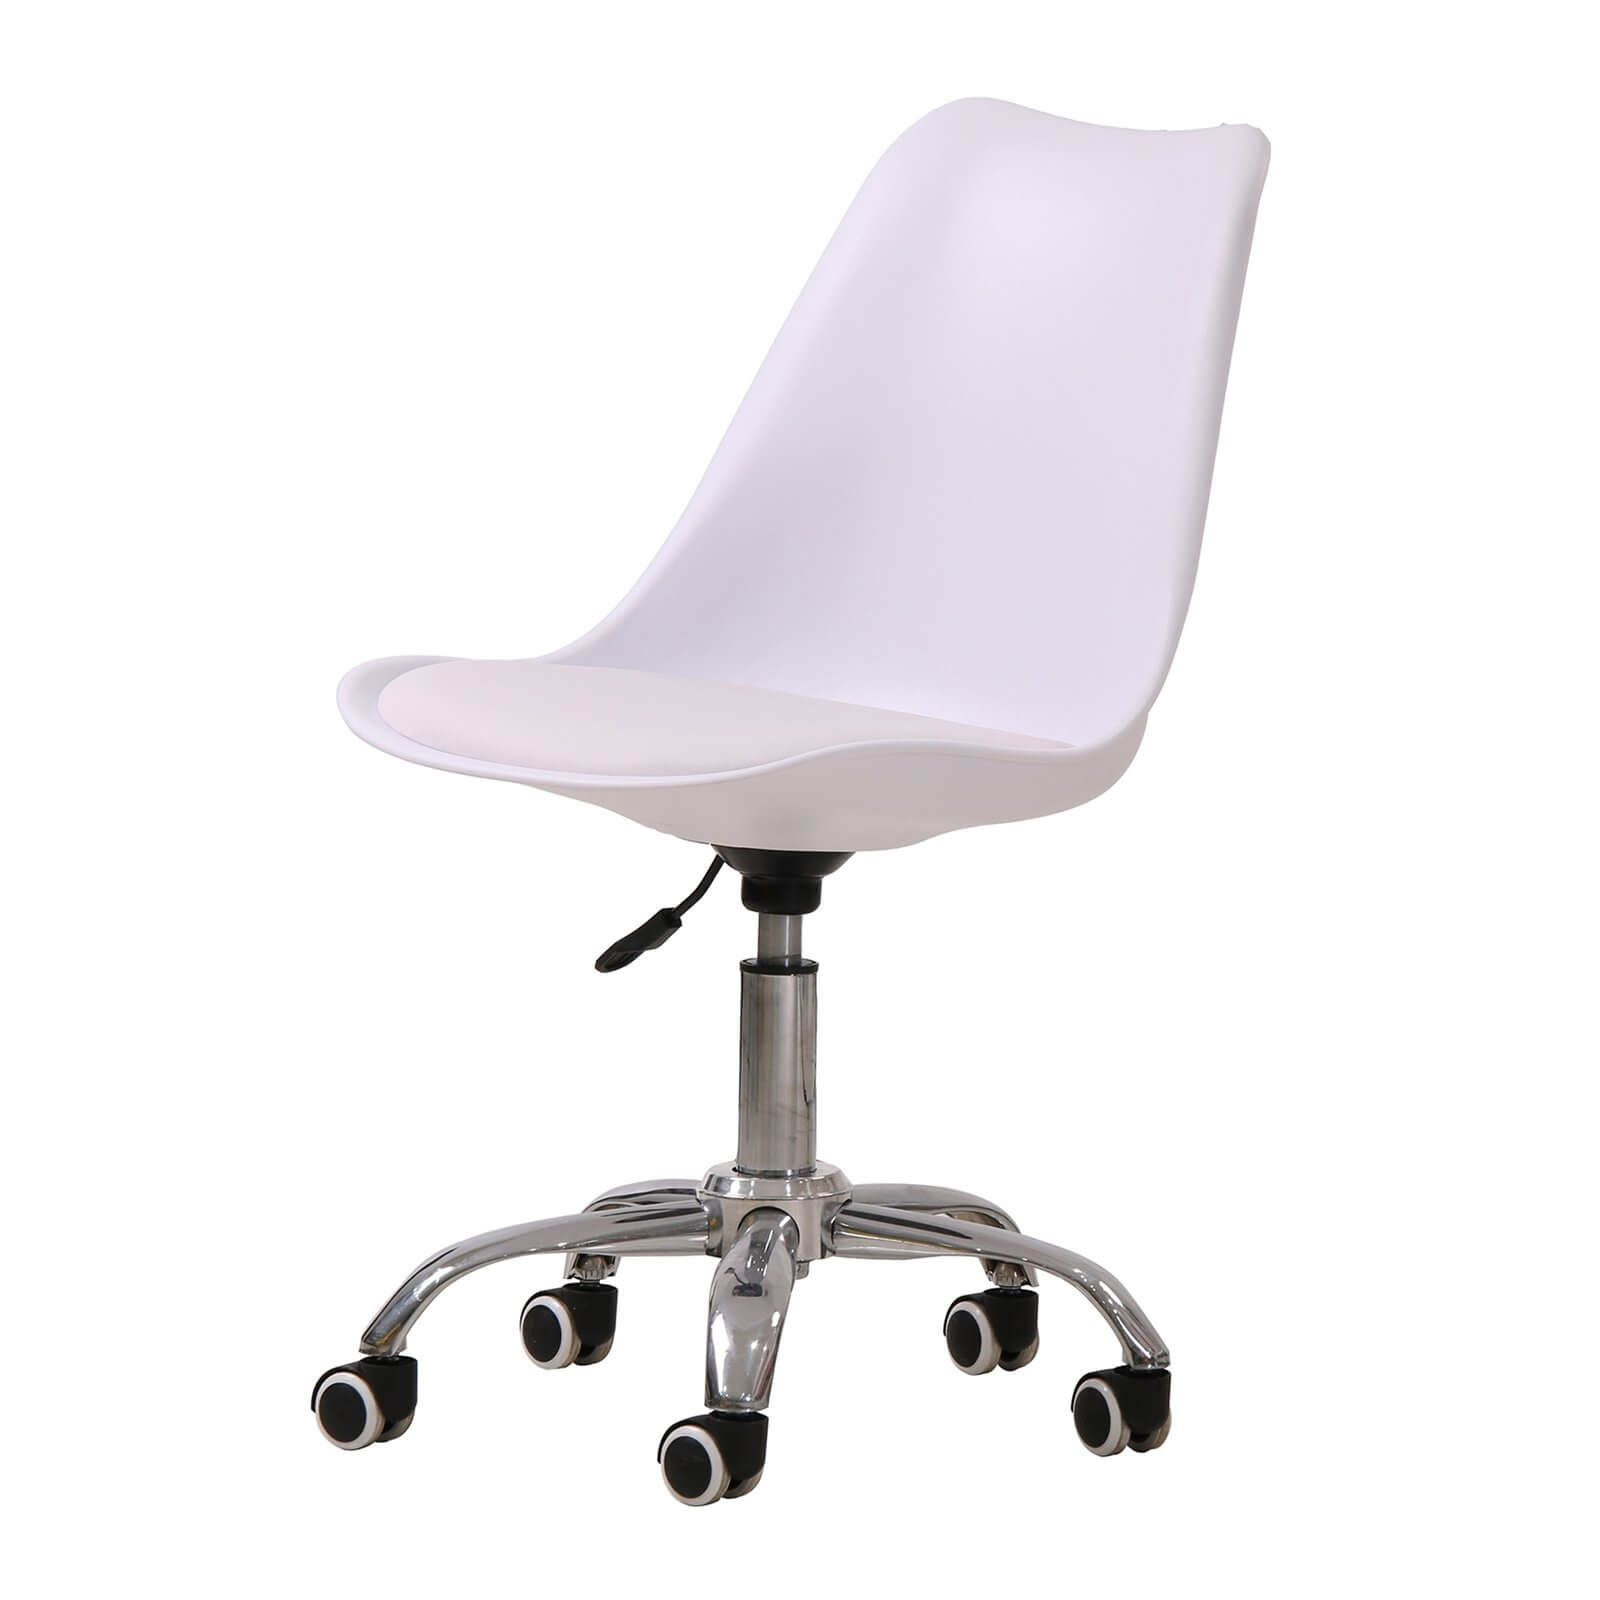 Orsen Swivel Office Chair - White